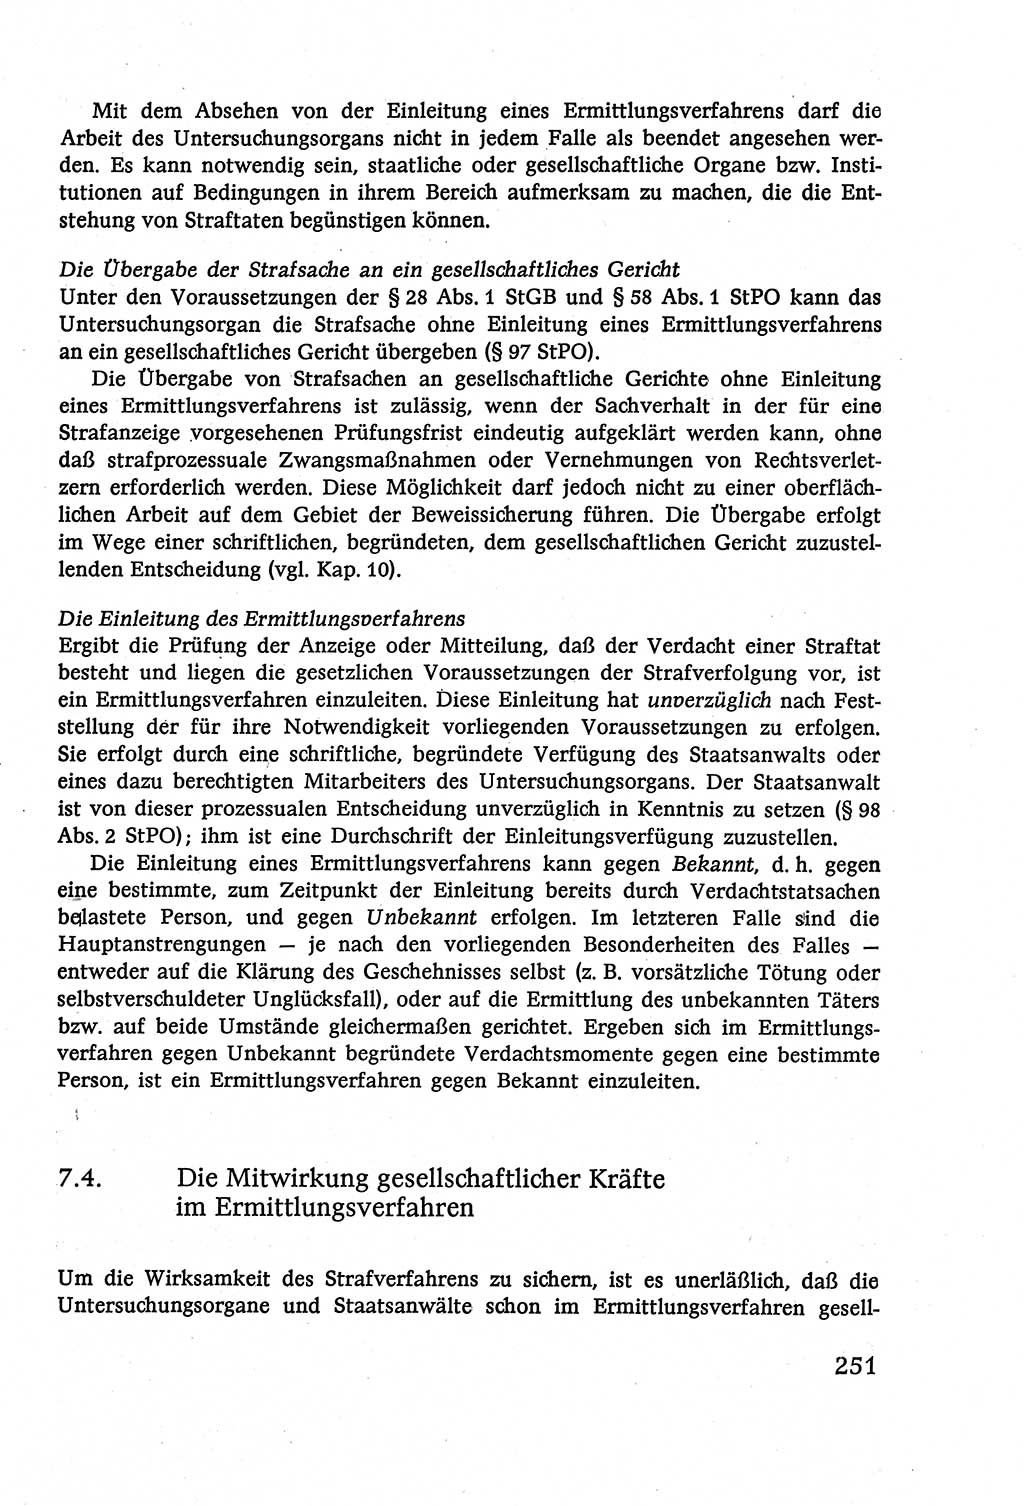 Strafverfahrensrecht [Deutsche Demokratische Republik (DDR)], Lehrbuch 1977, Seite 251 (Strafverf.-R. DDR Lb. 1977, S. 251)